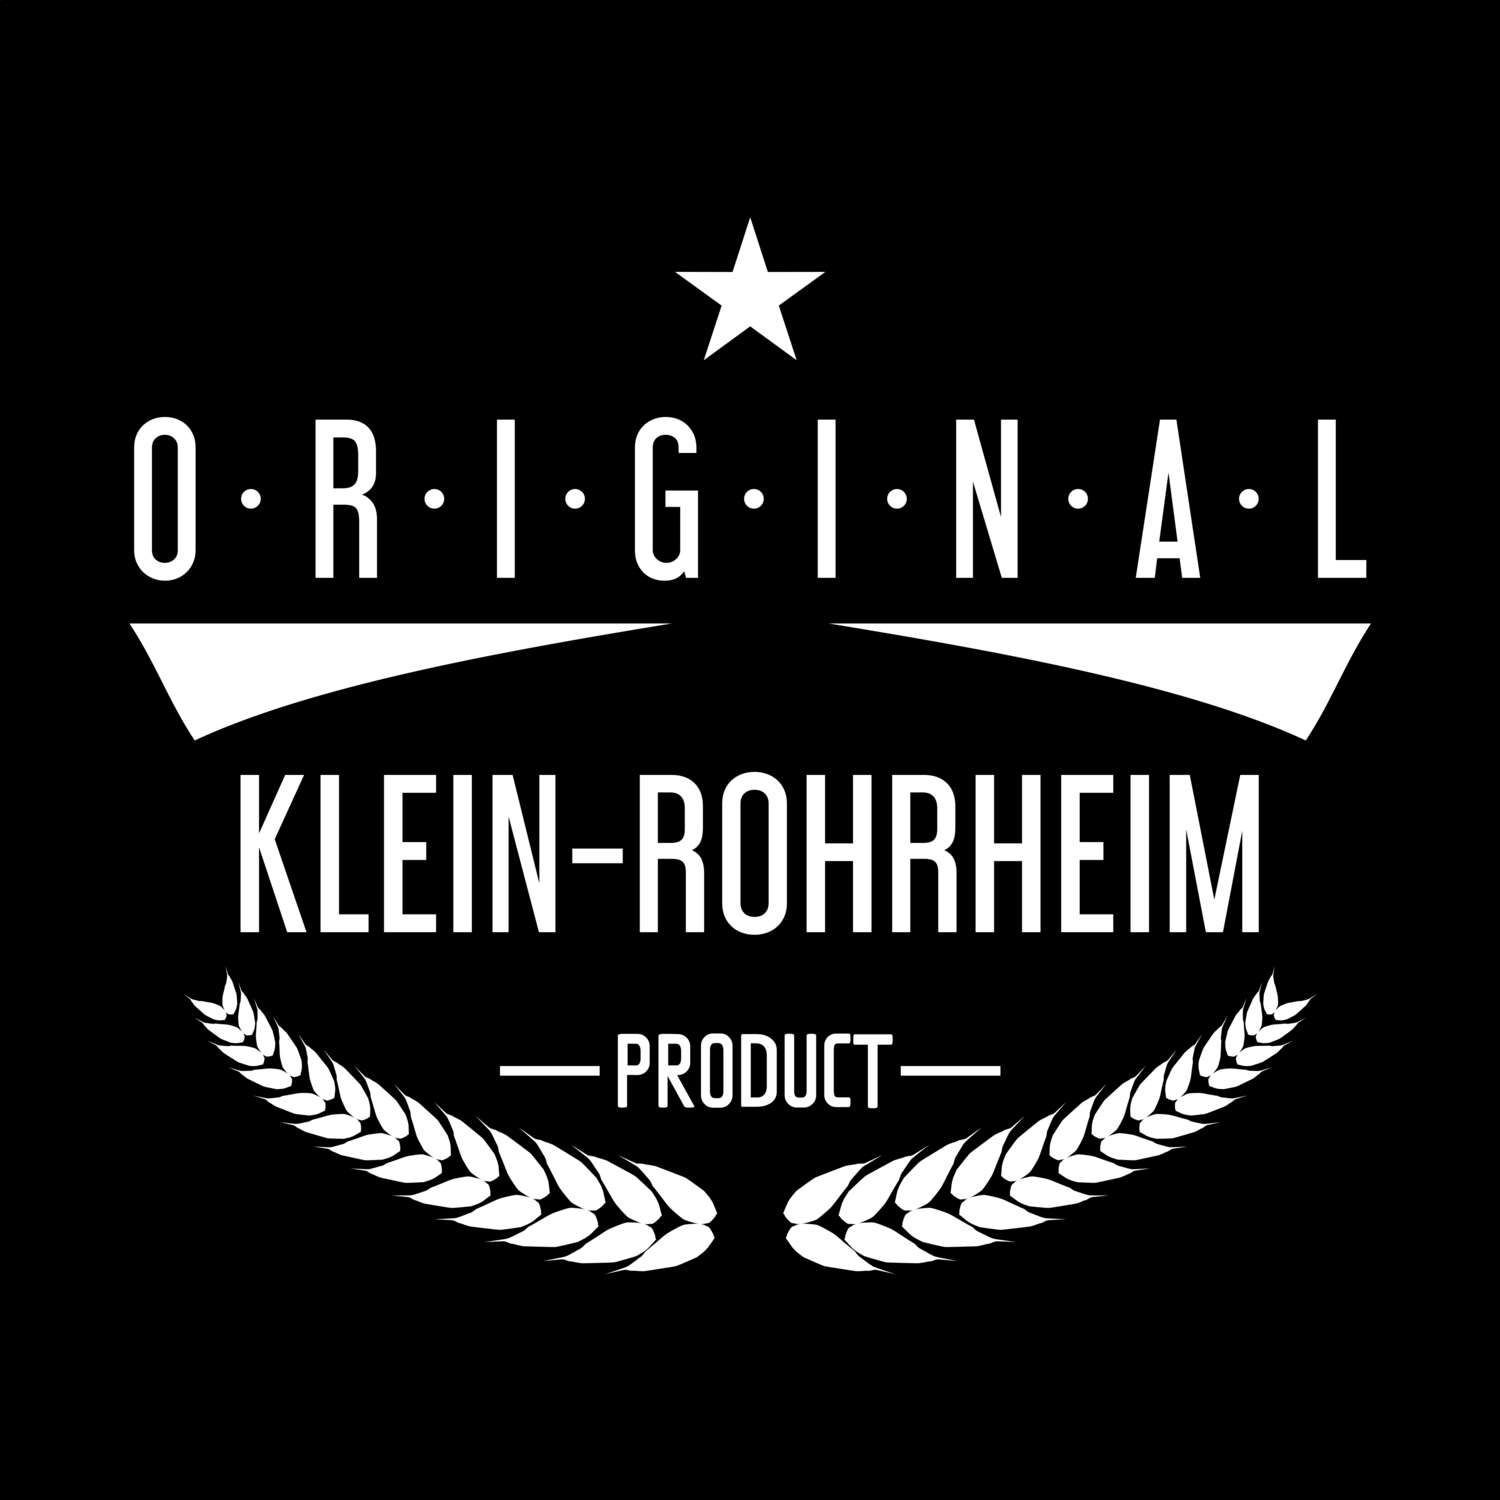 Klein-Rohrheim T-Shirt »Original Product«